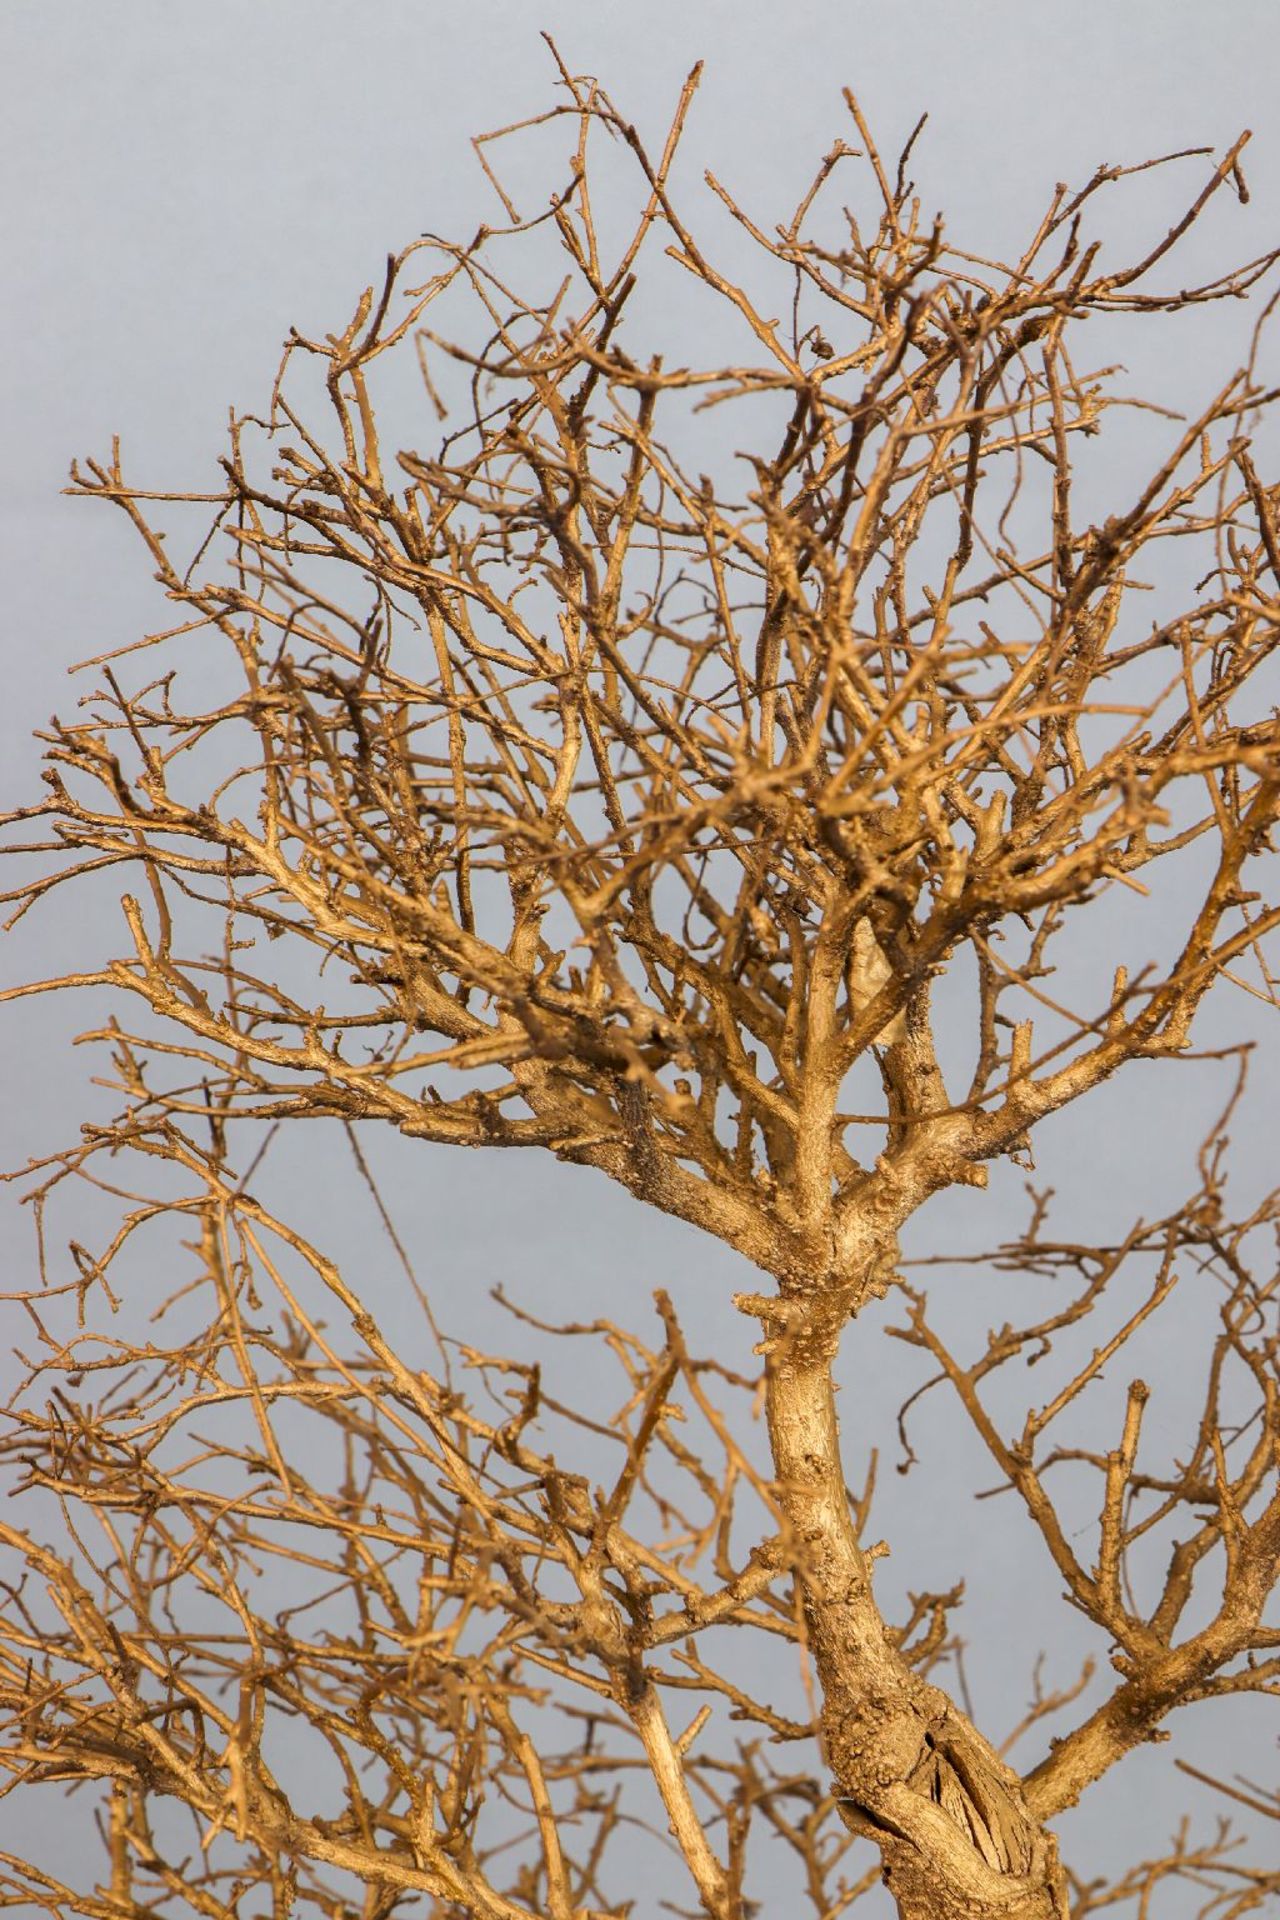 ¨Bonsai¨-Gewächs (toter, blattloser Baum) in Porzellan-Pflanzschale (roter Scherben) - Image 3 of 3